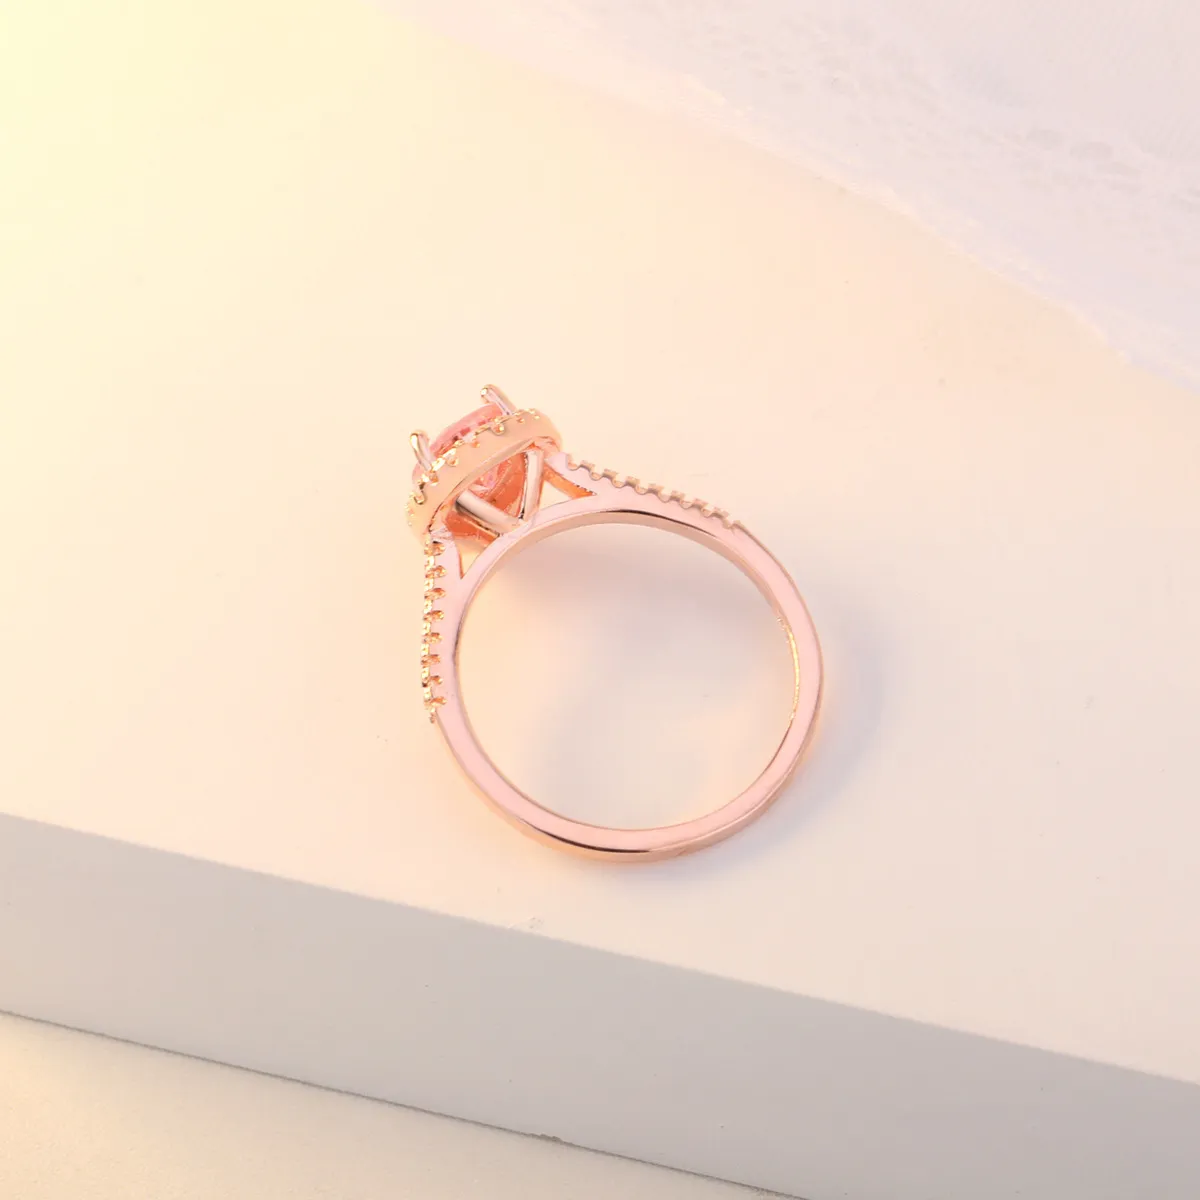 OMHXZJ Hele Europese Mode Vrouw Meisje Party Huwelijkscadeau Waterdruppel Roze Witte Zirkoon 18KT Rose Gouden Ring RR5983400836